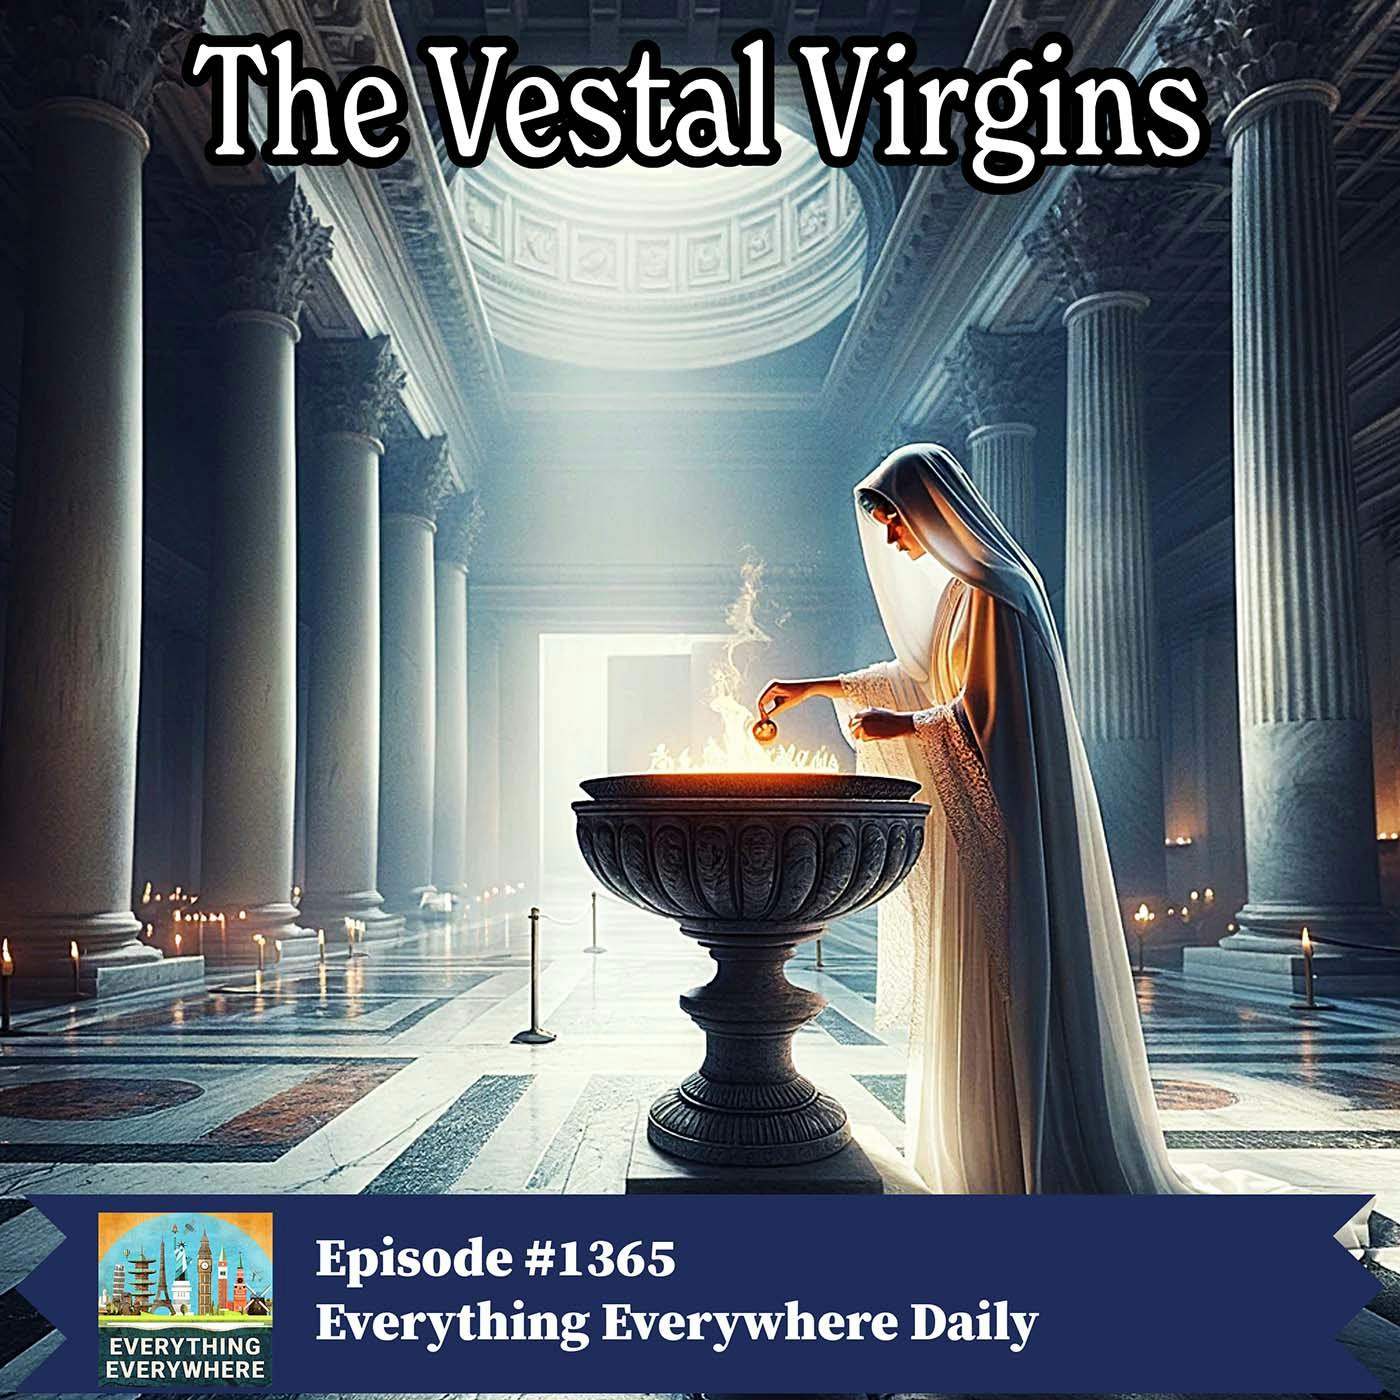 The Vestal Virgins